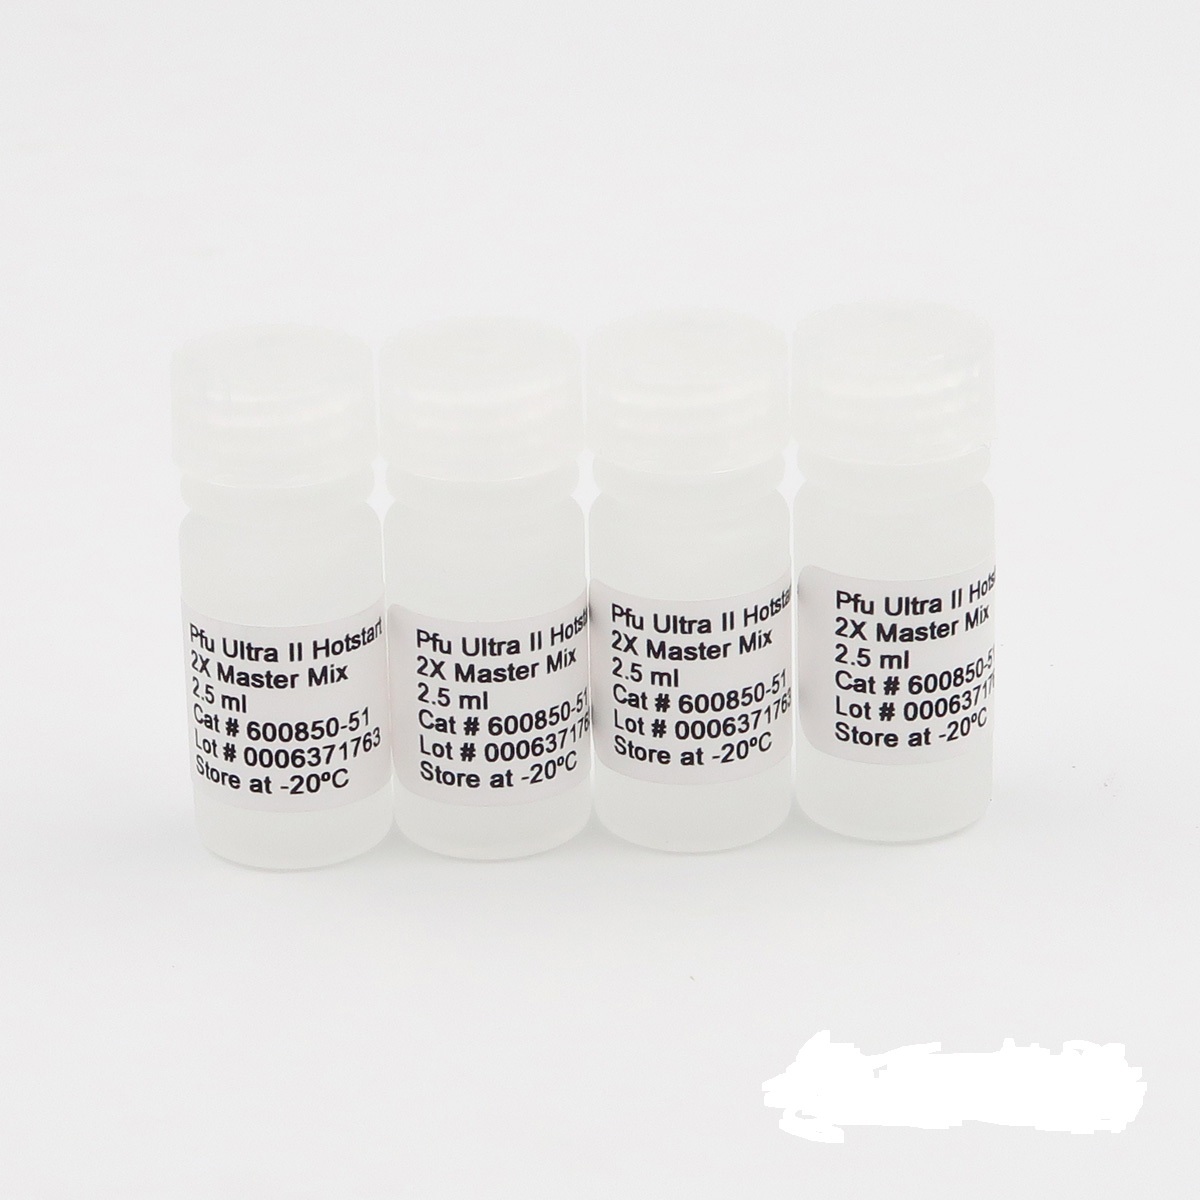 水痘-带状疱疹病毒疫苗株染料法荧光定量PCR试剂盒